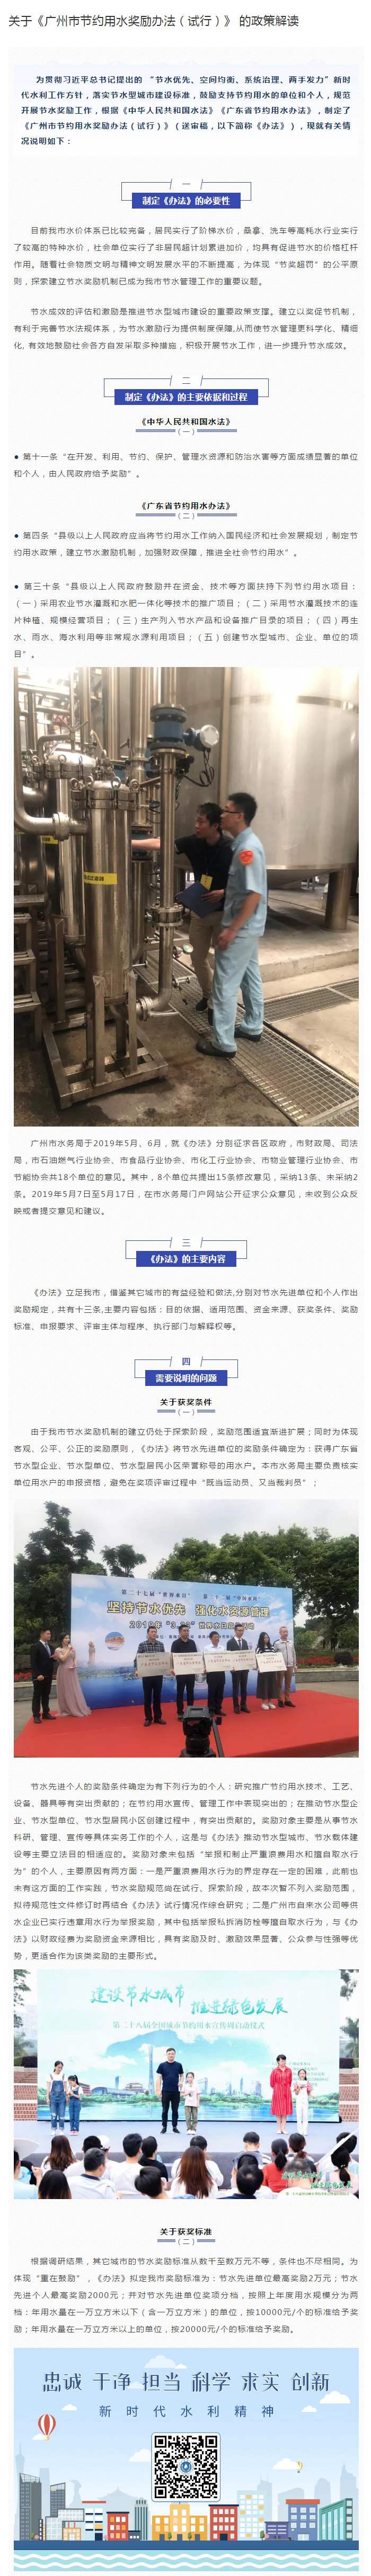 《广州市节约用水奖励办法》政策解读.jpg